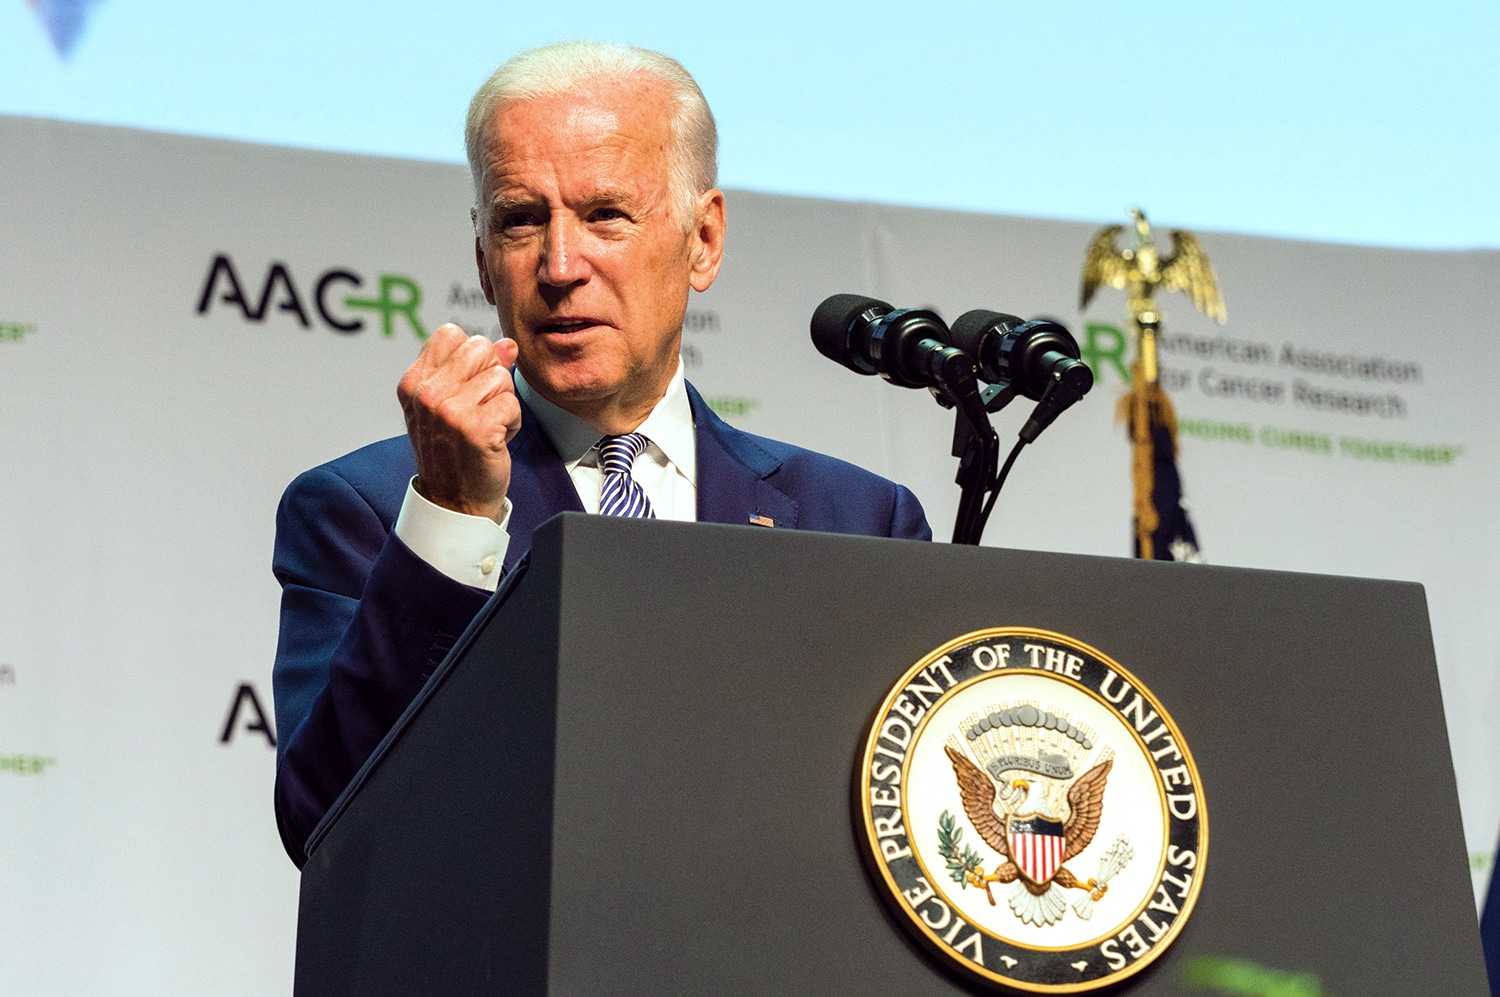 Vice President Joe Biden Brings “Moonshot” to AACR Annual Meeting